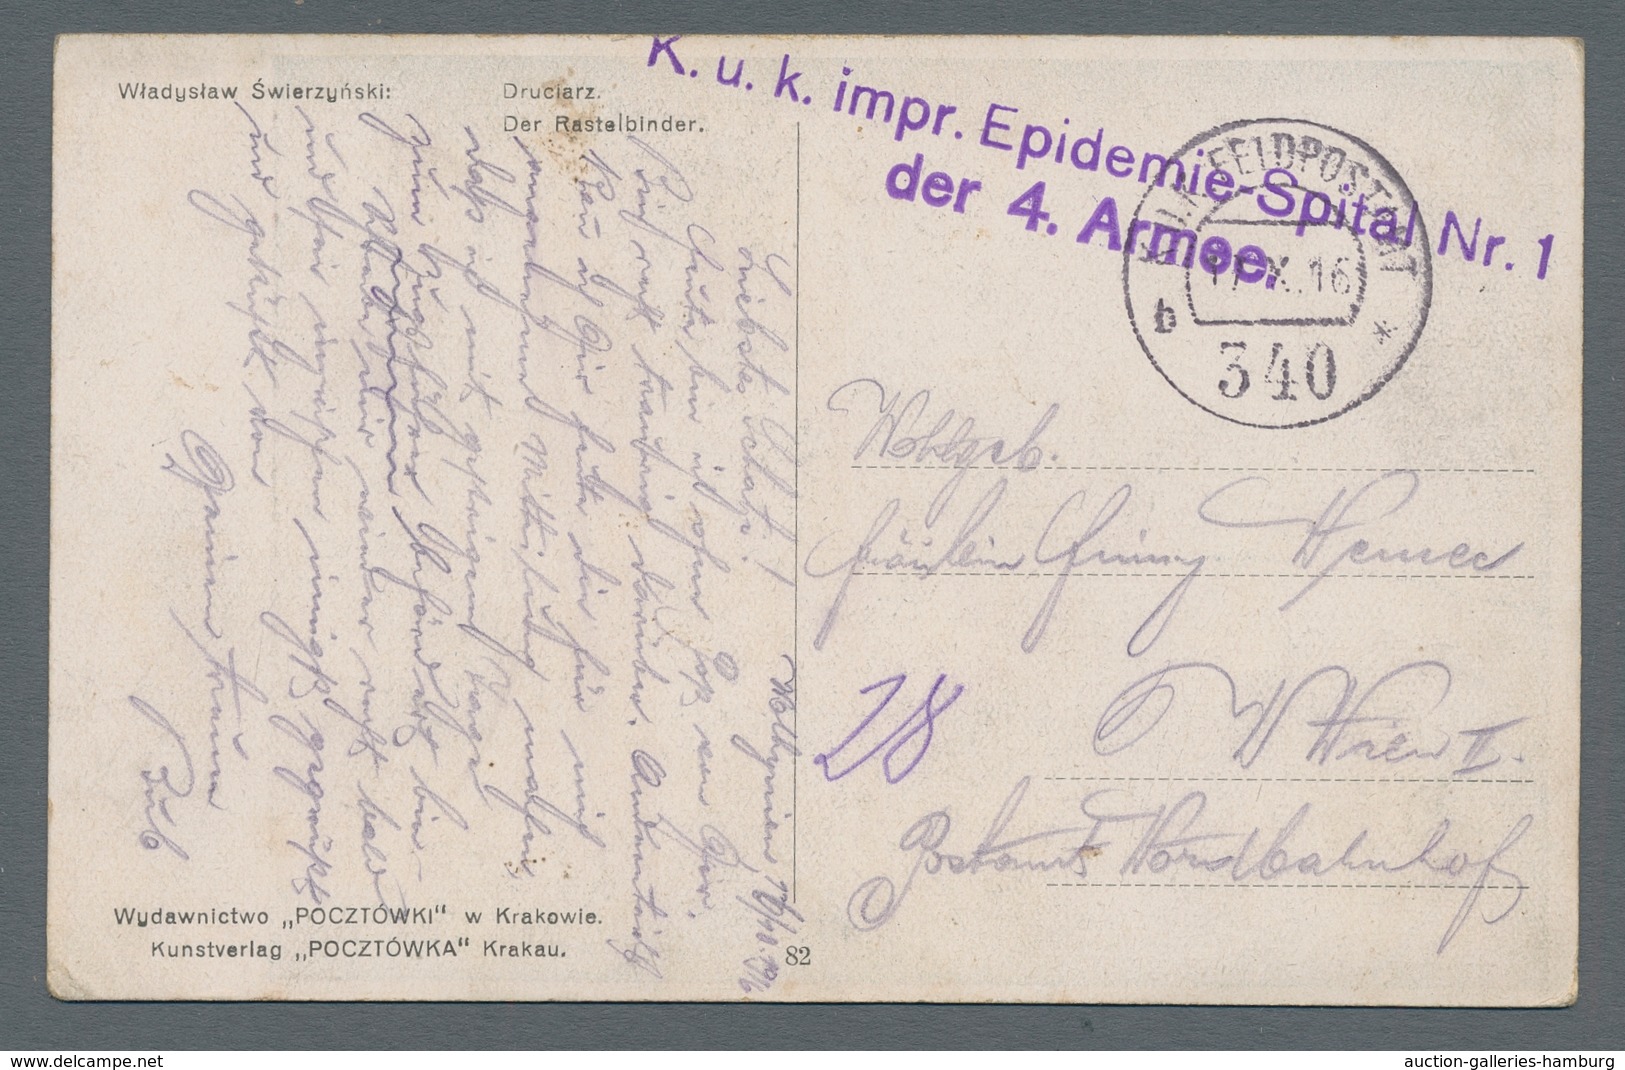 Österreich - Militärpost / Feldpost: 1915-1918, interessante Partie von neun österreichischen Feldpo